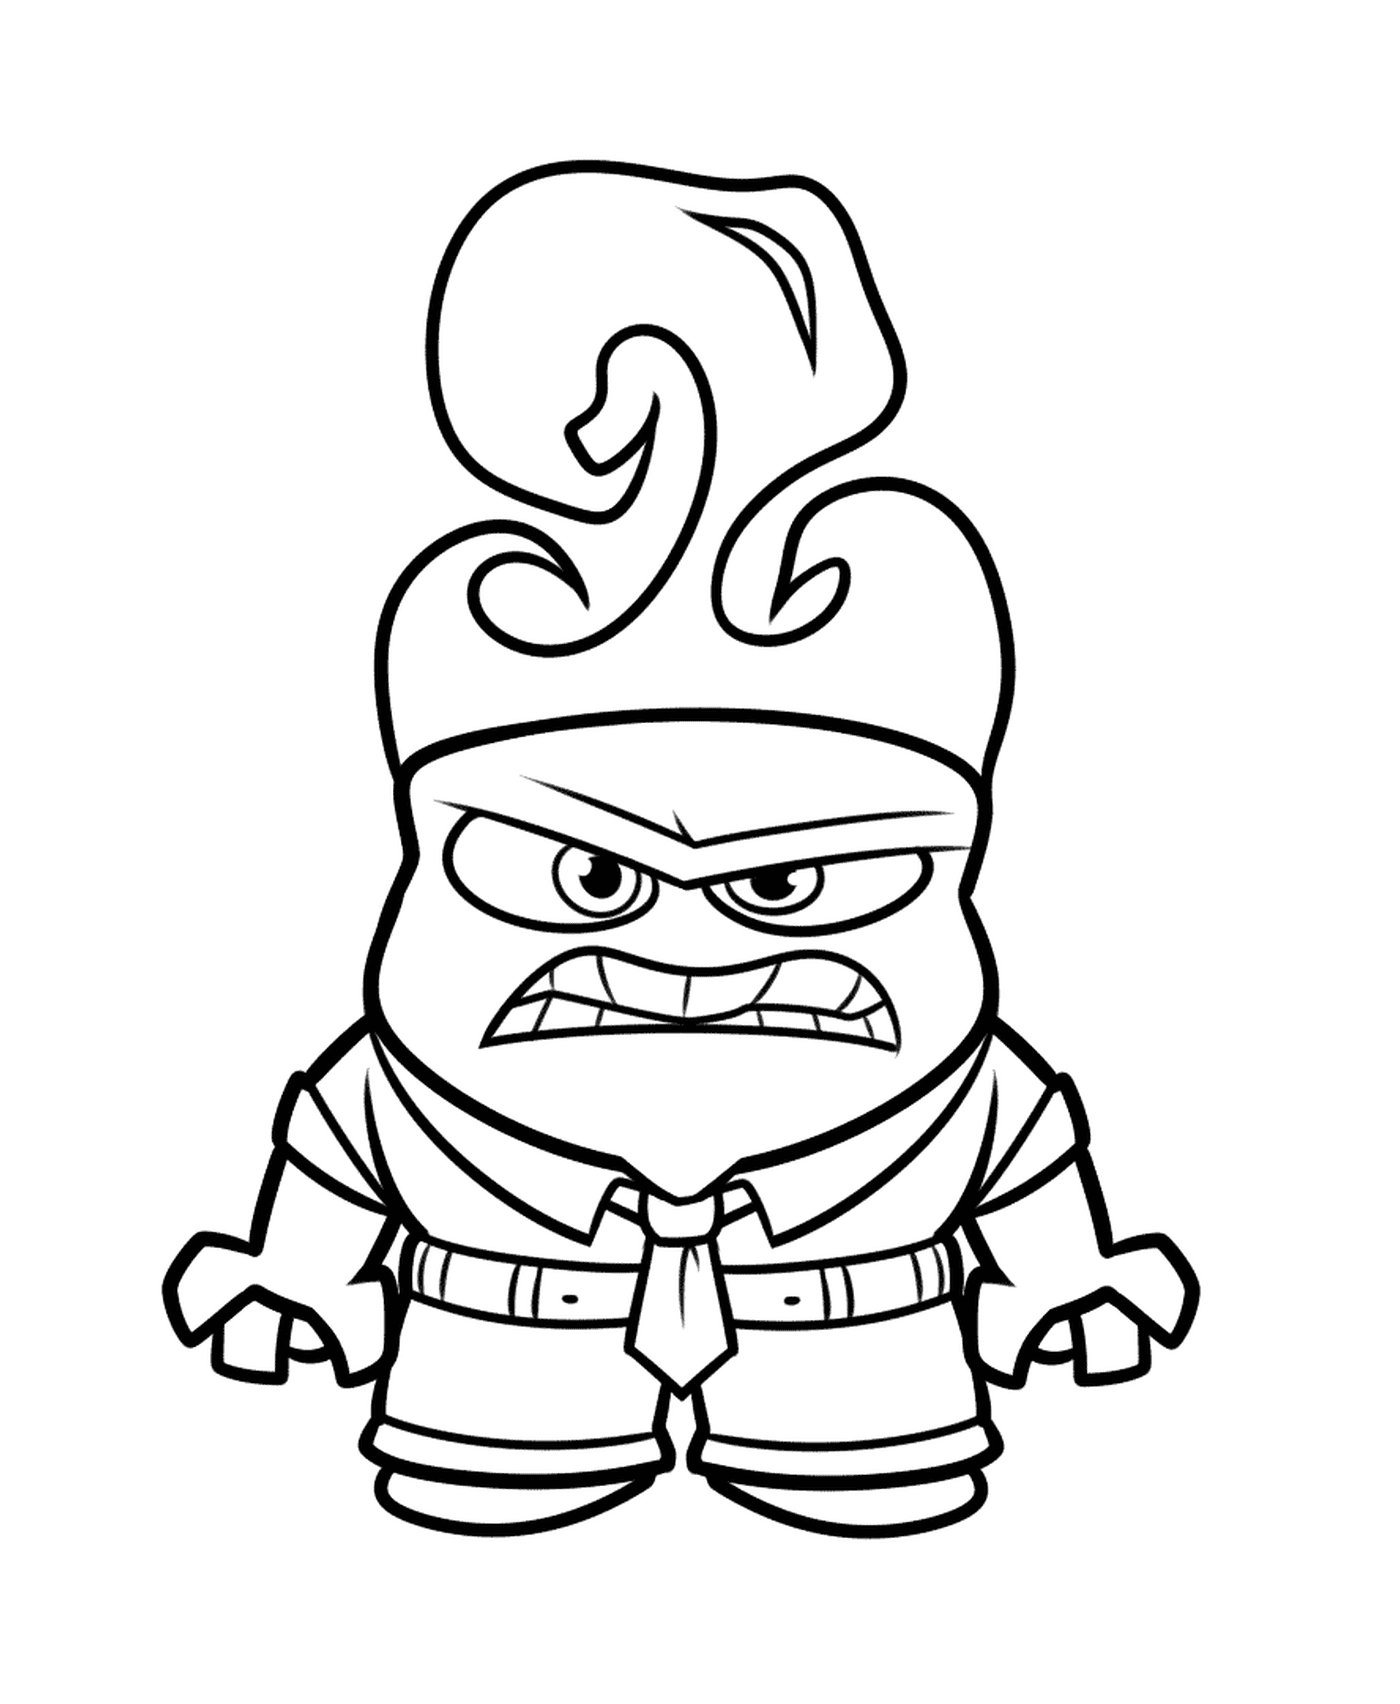   Un personnage de dessin animé en colère 